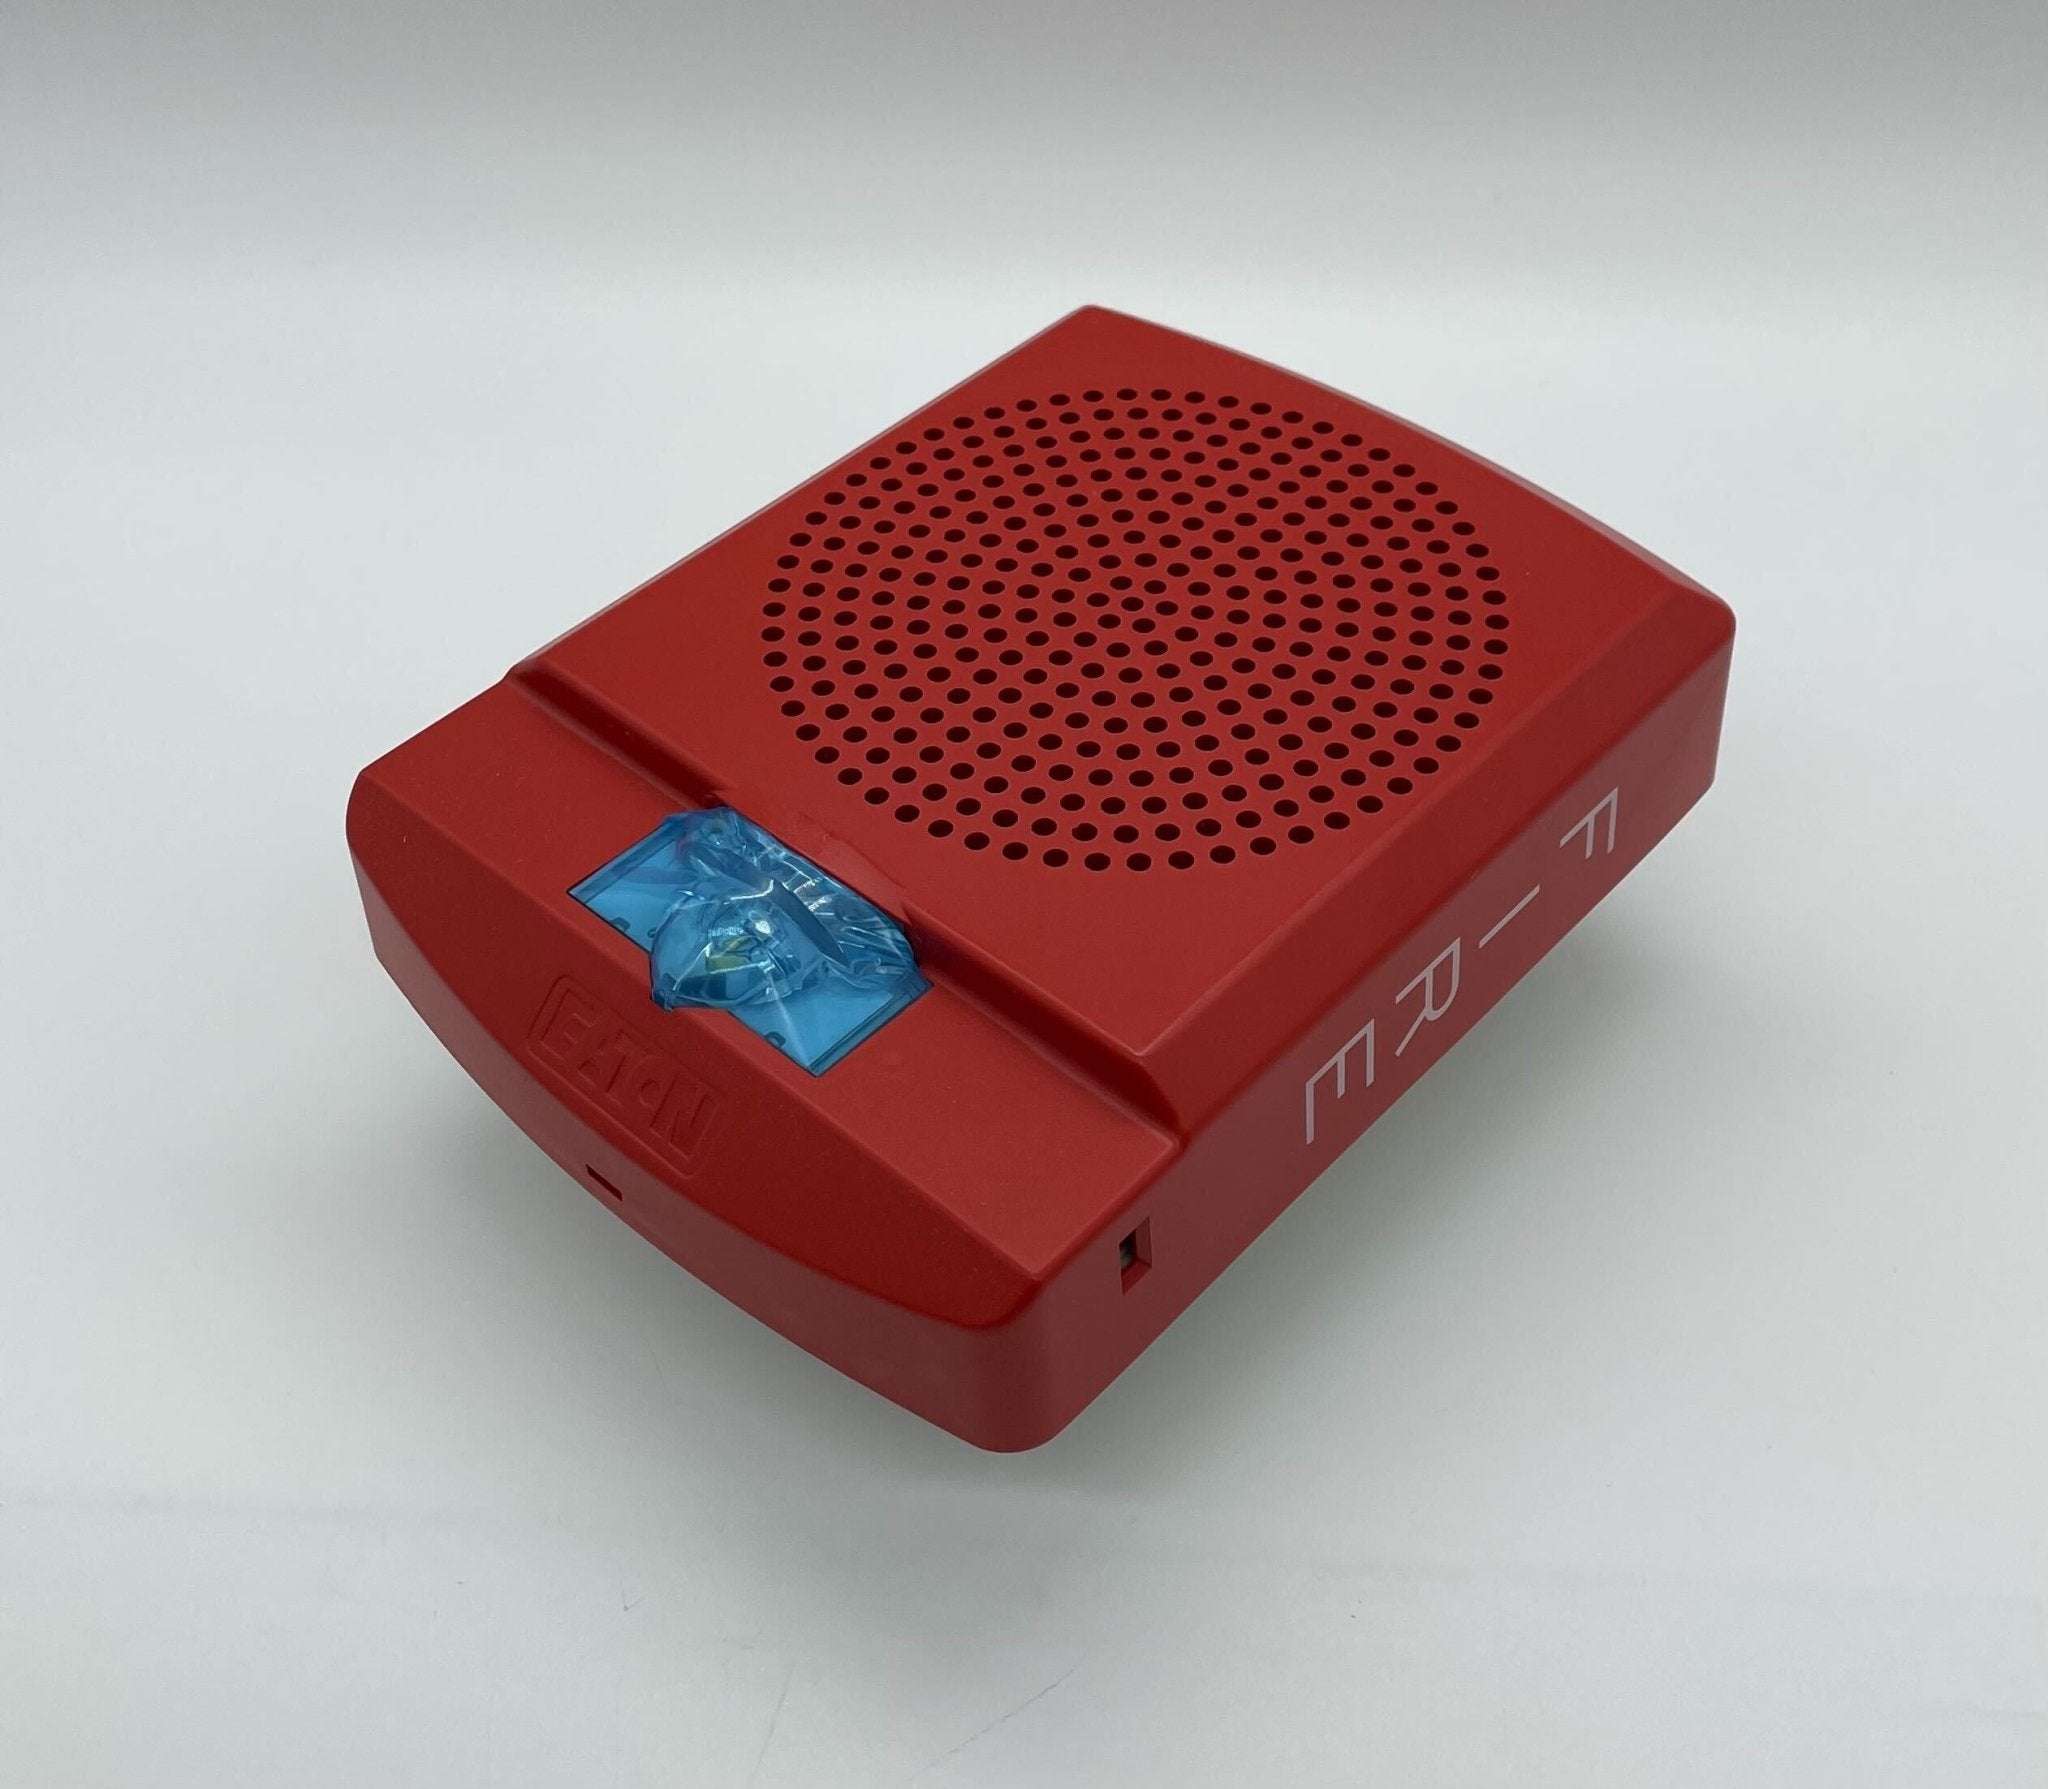 Wheelock LSPSTR3 - The Fire Alarm Supplier